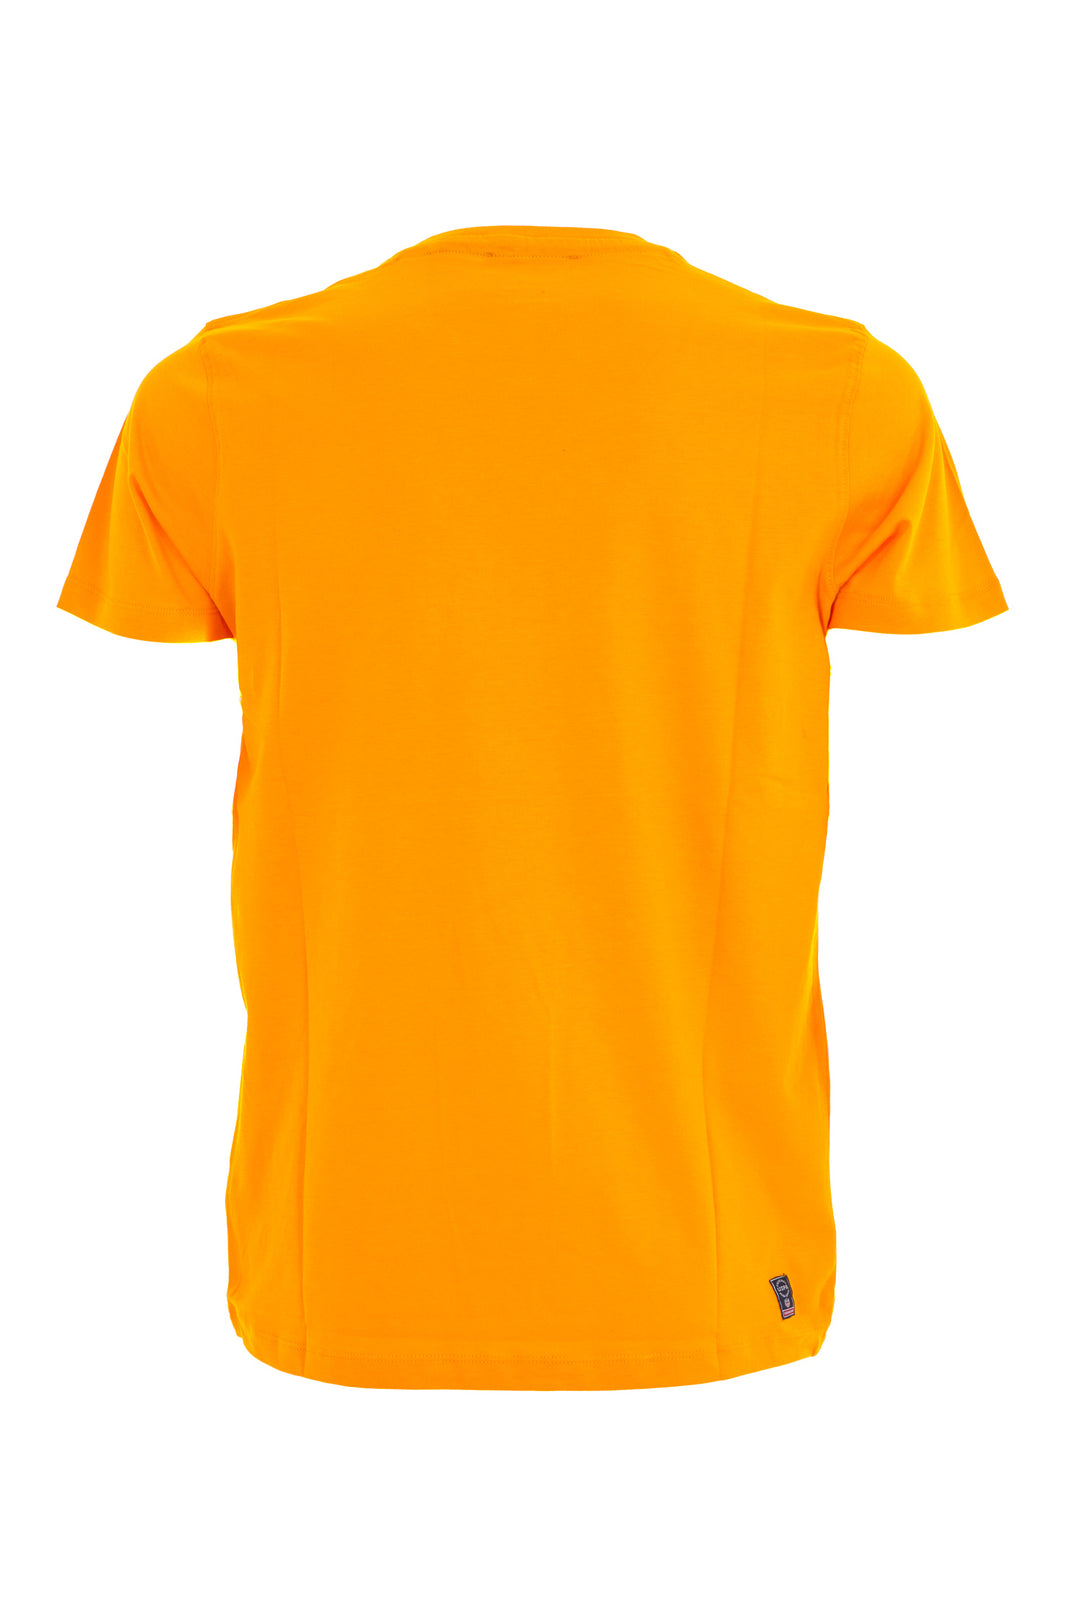 U.S. POLO ASSN. BEACHWEAR T-shirt in cotone con logo ricamato arancio - Mancinelli 1954